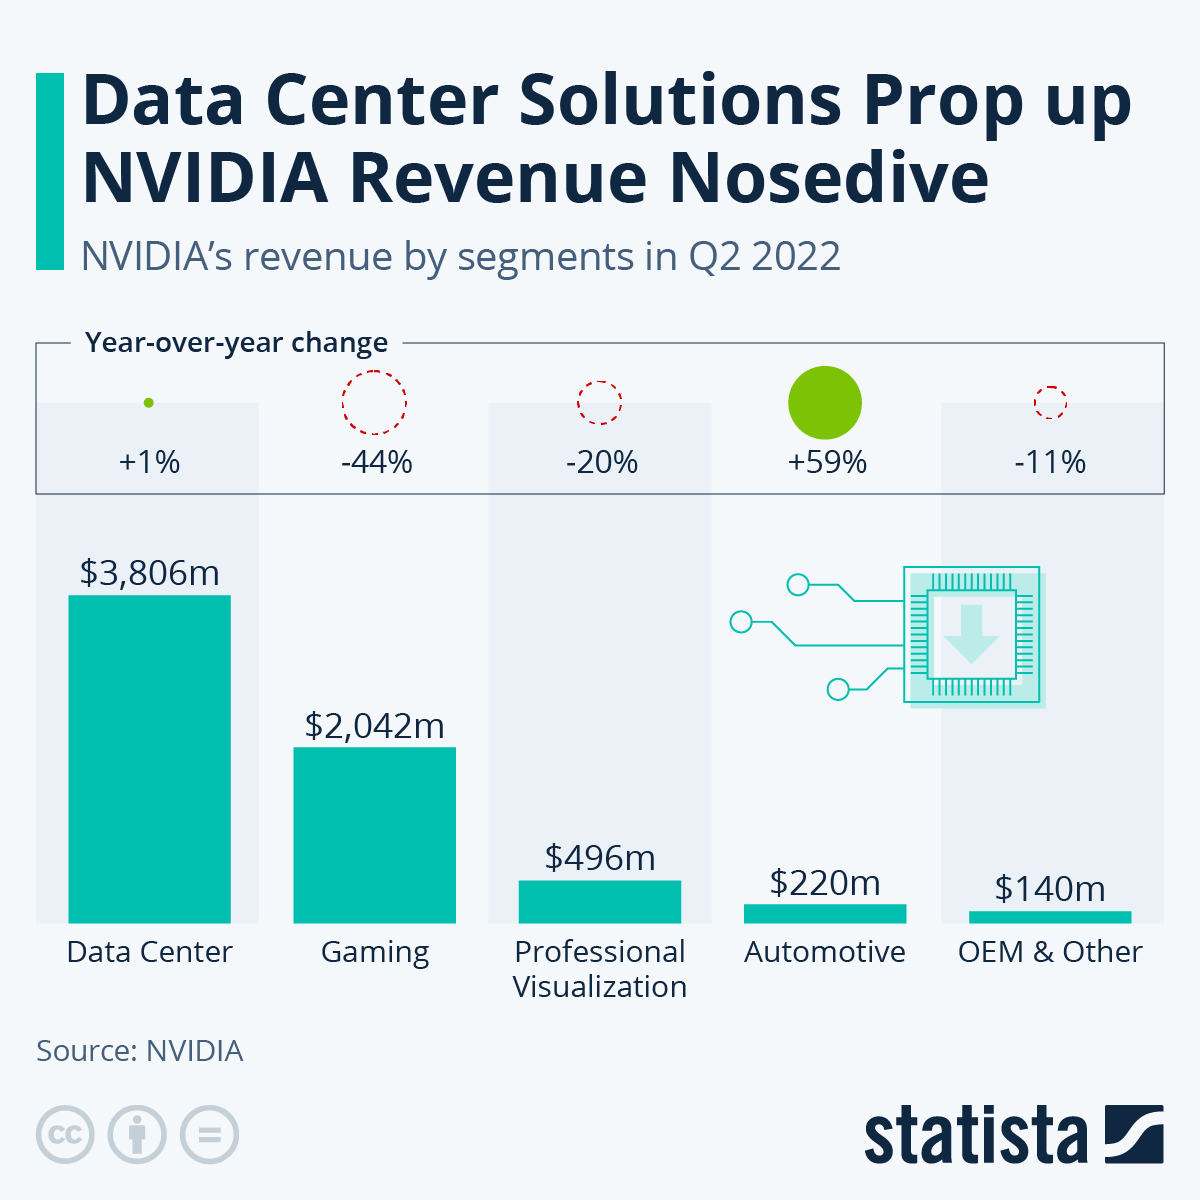 NVIDIA's revenue by segments in Q2 2022